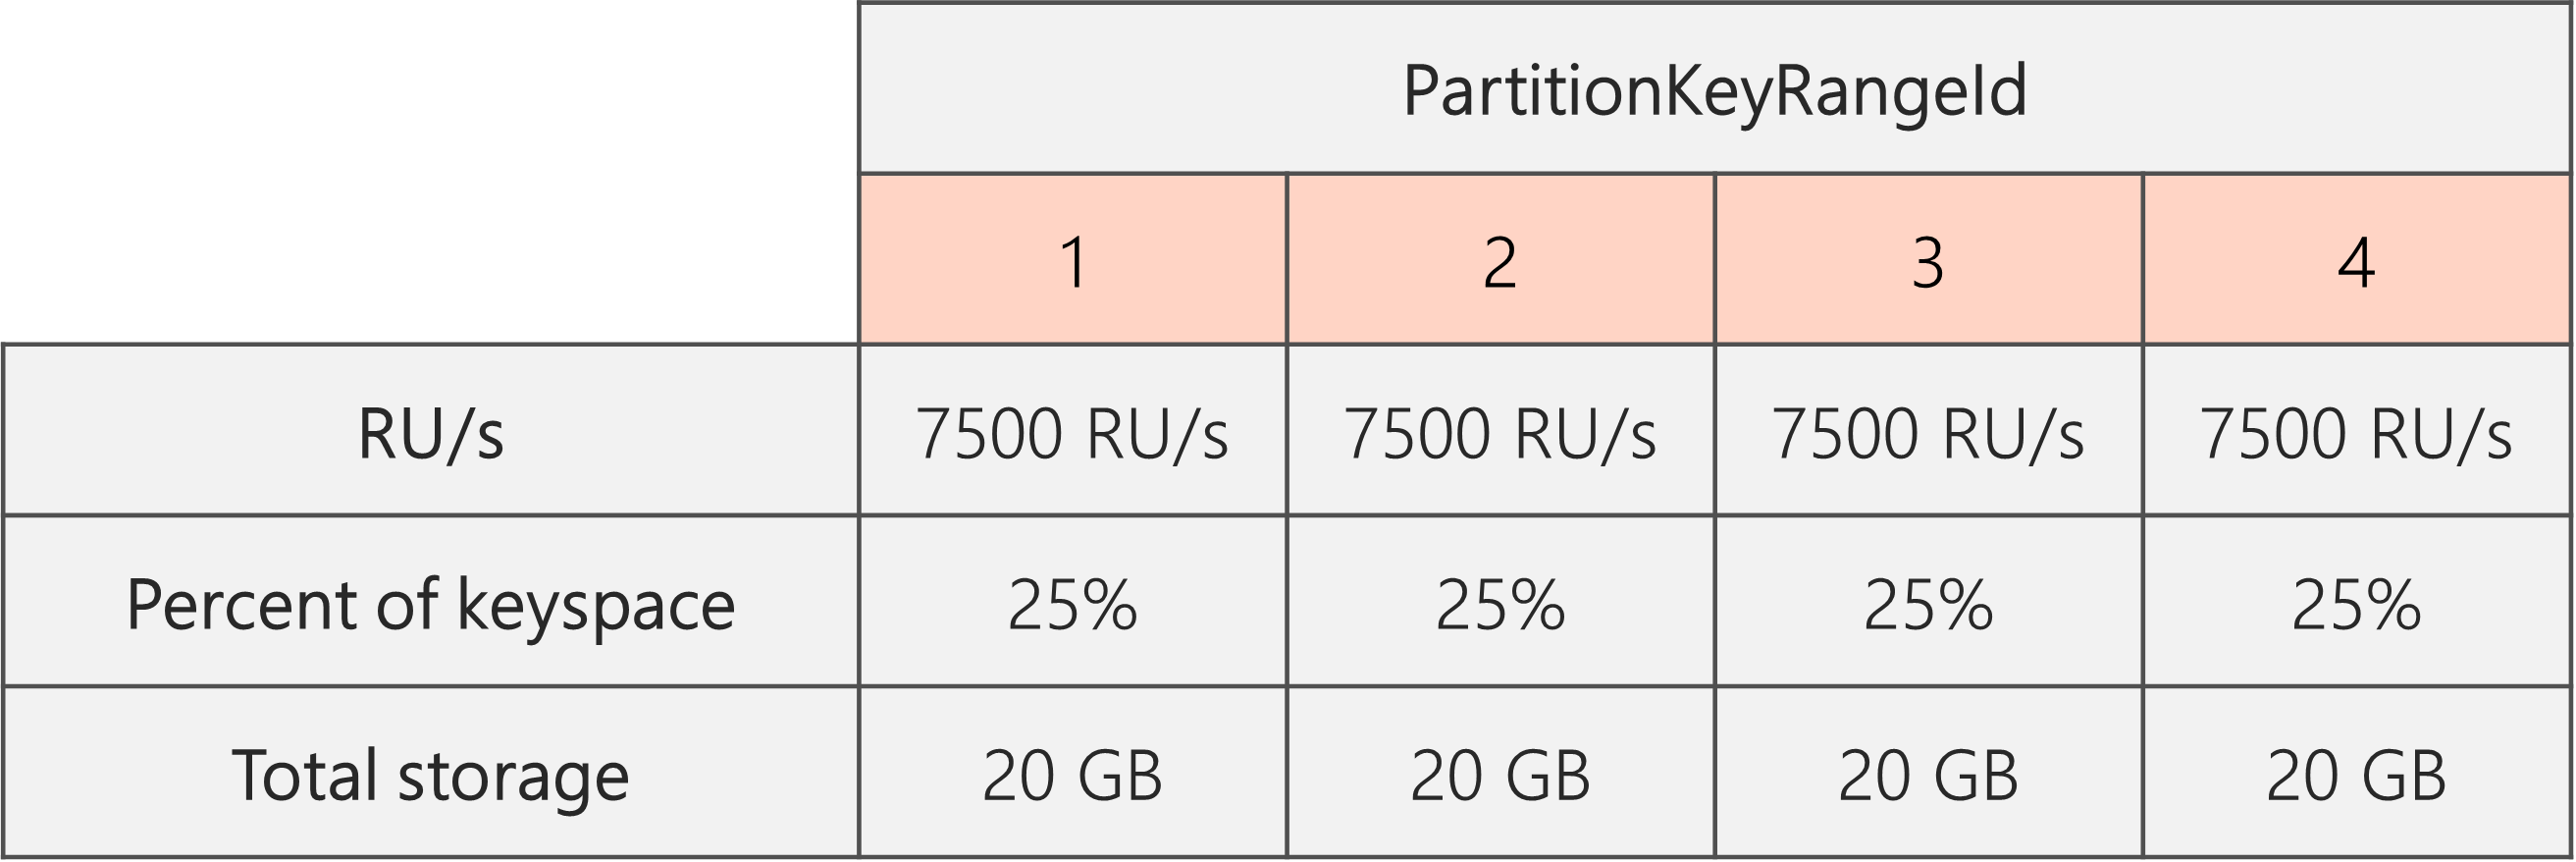 分割完成且 RU/秒從 40,000 RU/秒降低至 30,000 RU/秒之後，每個索引鍵空間有 4 個 PartitionKeyRangeIds，每個索引鍵空間 7500 RU/秒，佔總索引鍵空間的 25% （20 GB）